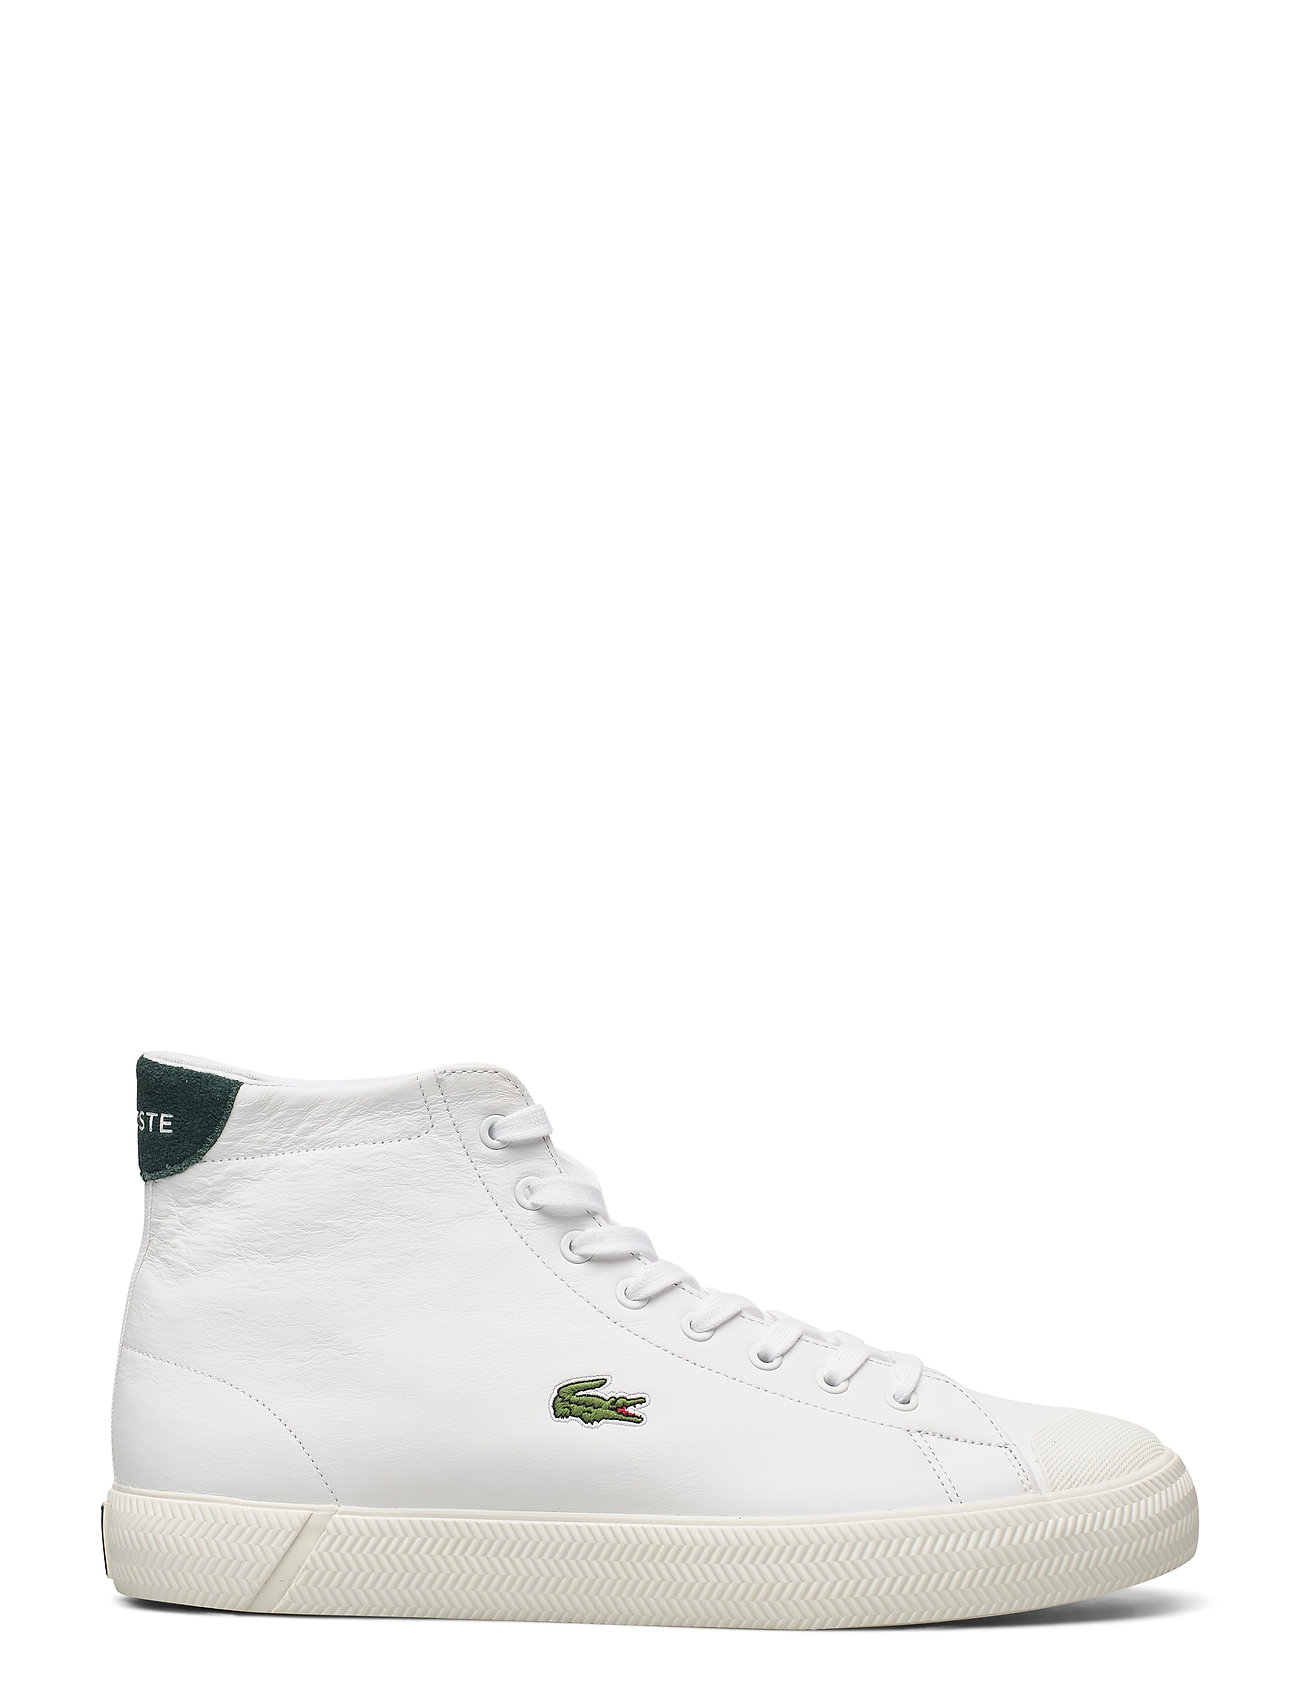 Ræv Ruin Forbigående Gripshot Mid01201cma High-top Sneakers Hvid Lacoste Shoes sneakers fra  Lacoste til herre i WHT/GRN LTH - Pashion.dk